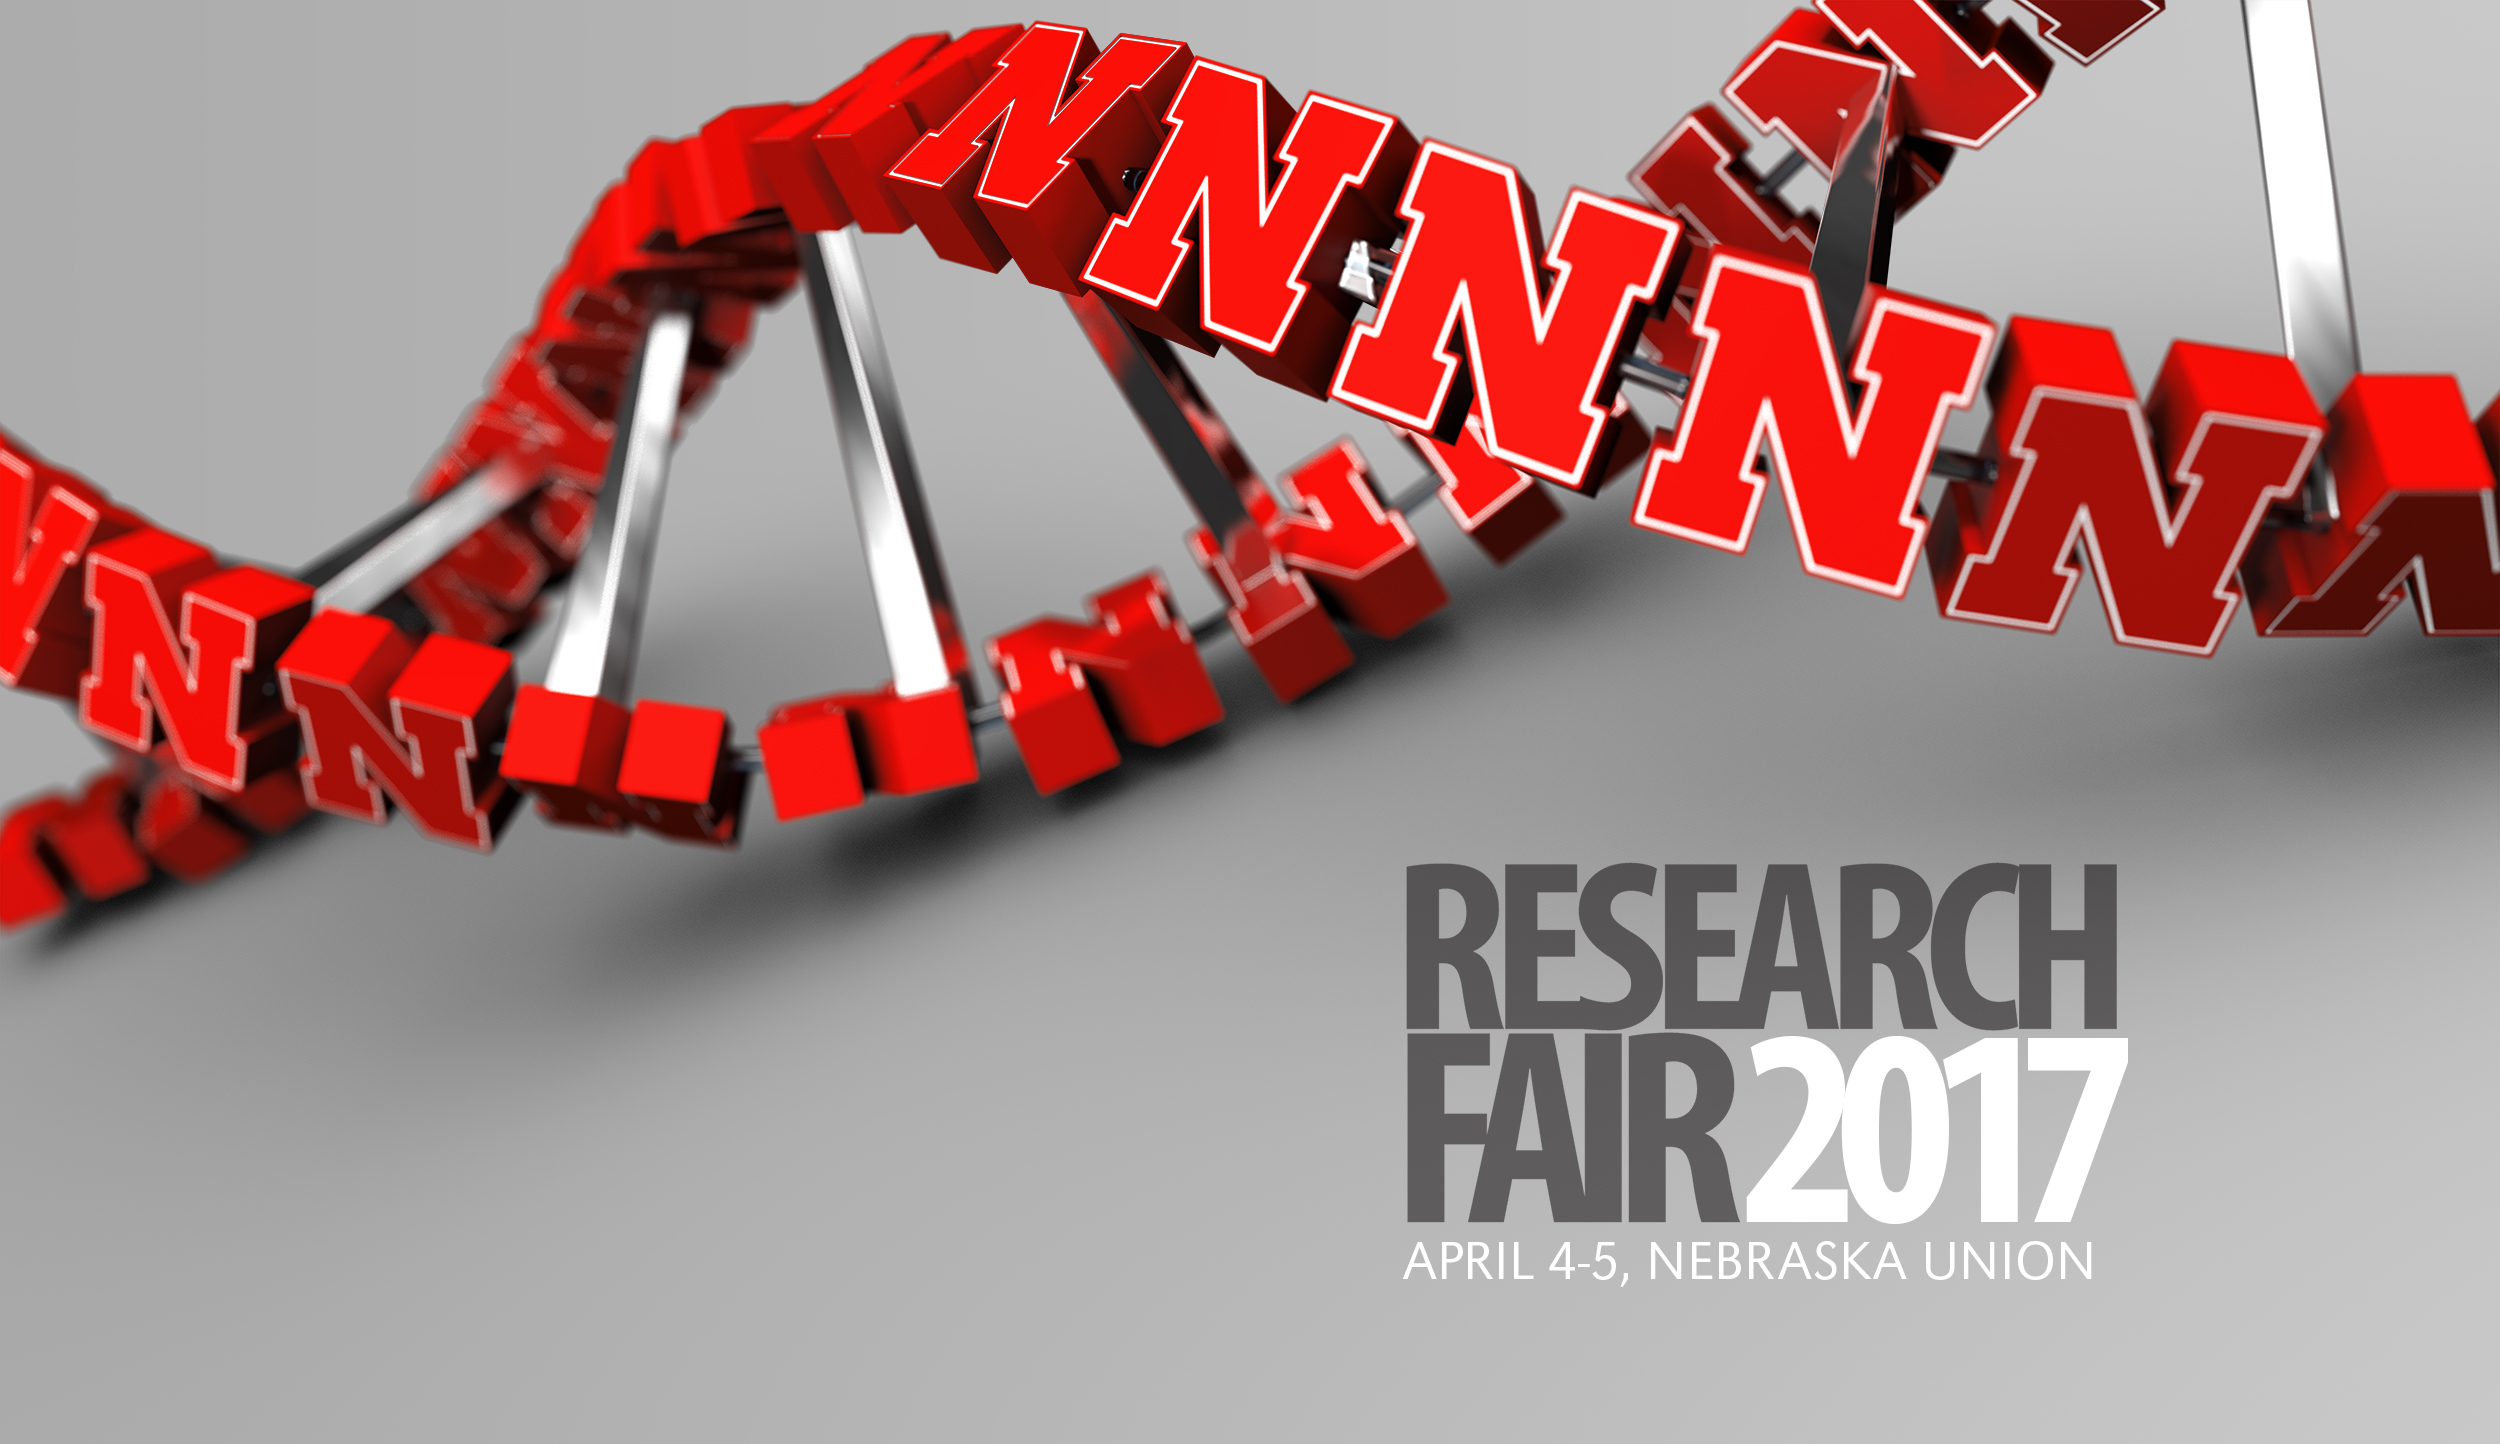 UNL Research Fair 2017